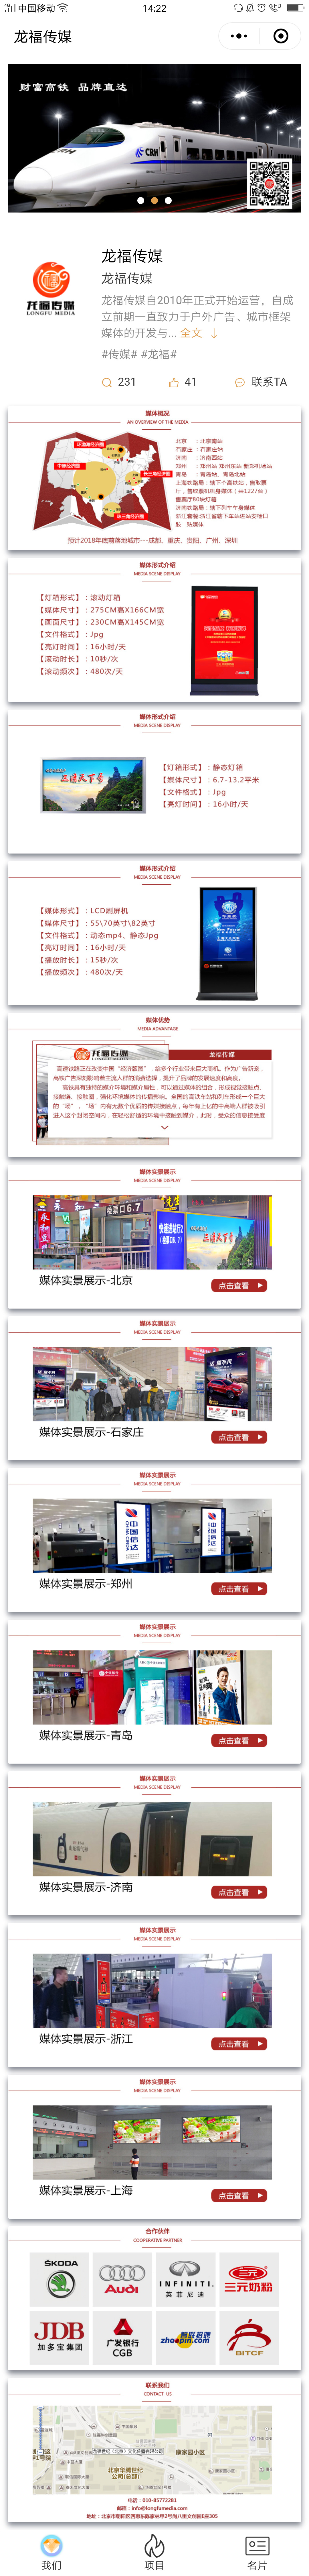 传媒红色北京-龙福传媒商标小程序高级版.jpg